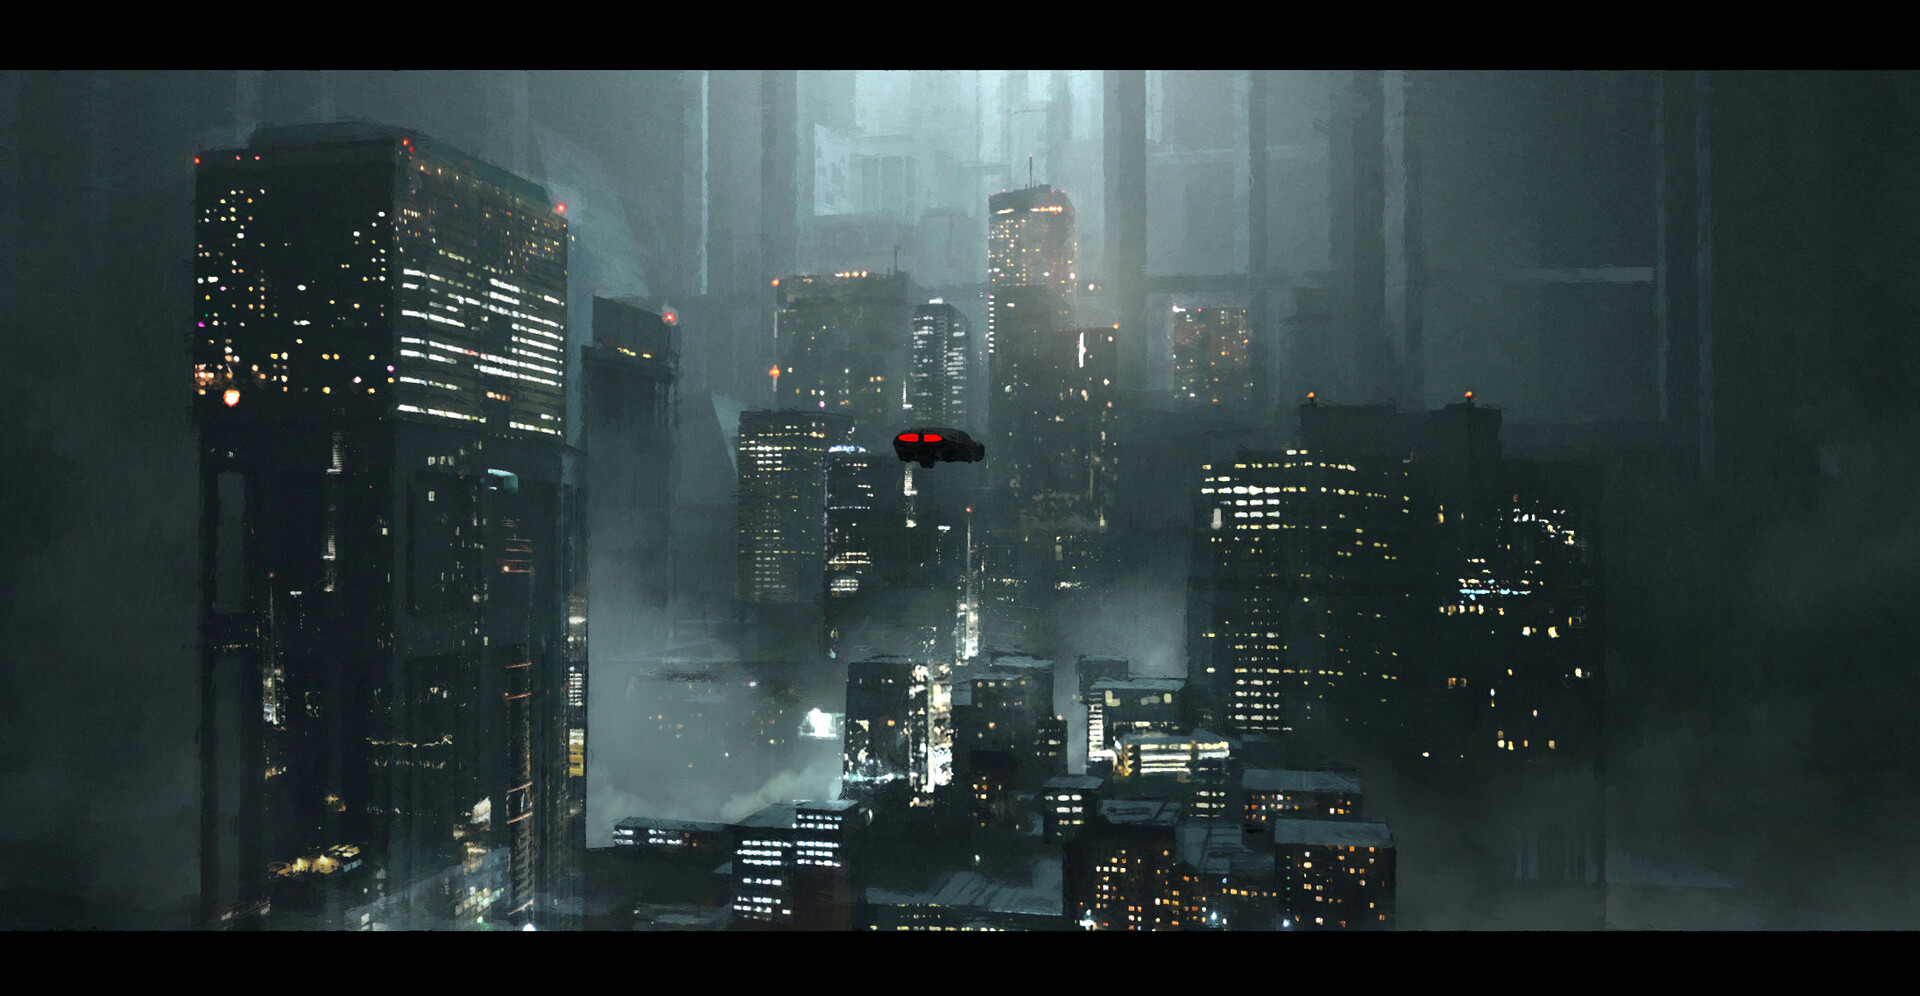 Neo Noir Blade Runner Blade Runner 2049 Cyberpunk City Futuristic Futurism Flying Car 1920x996